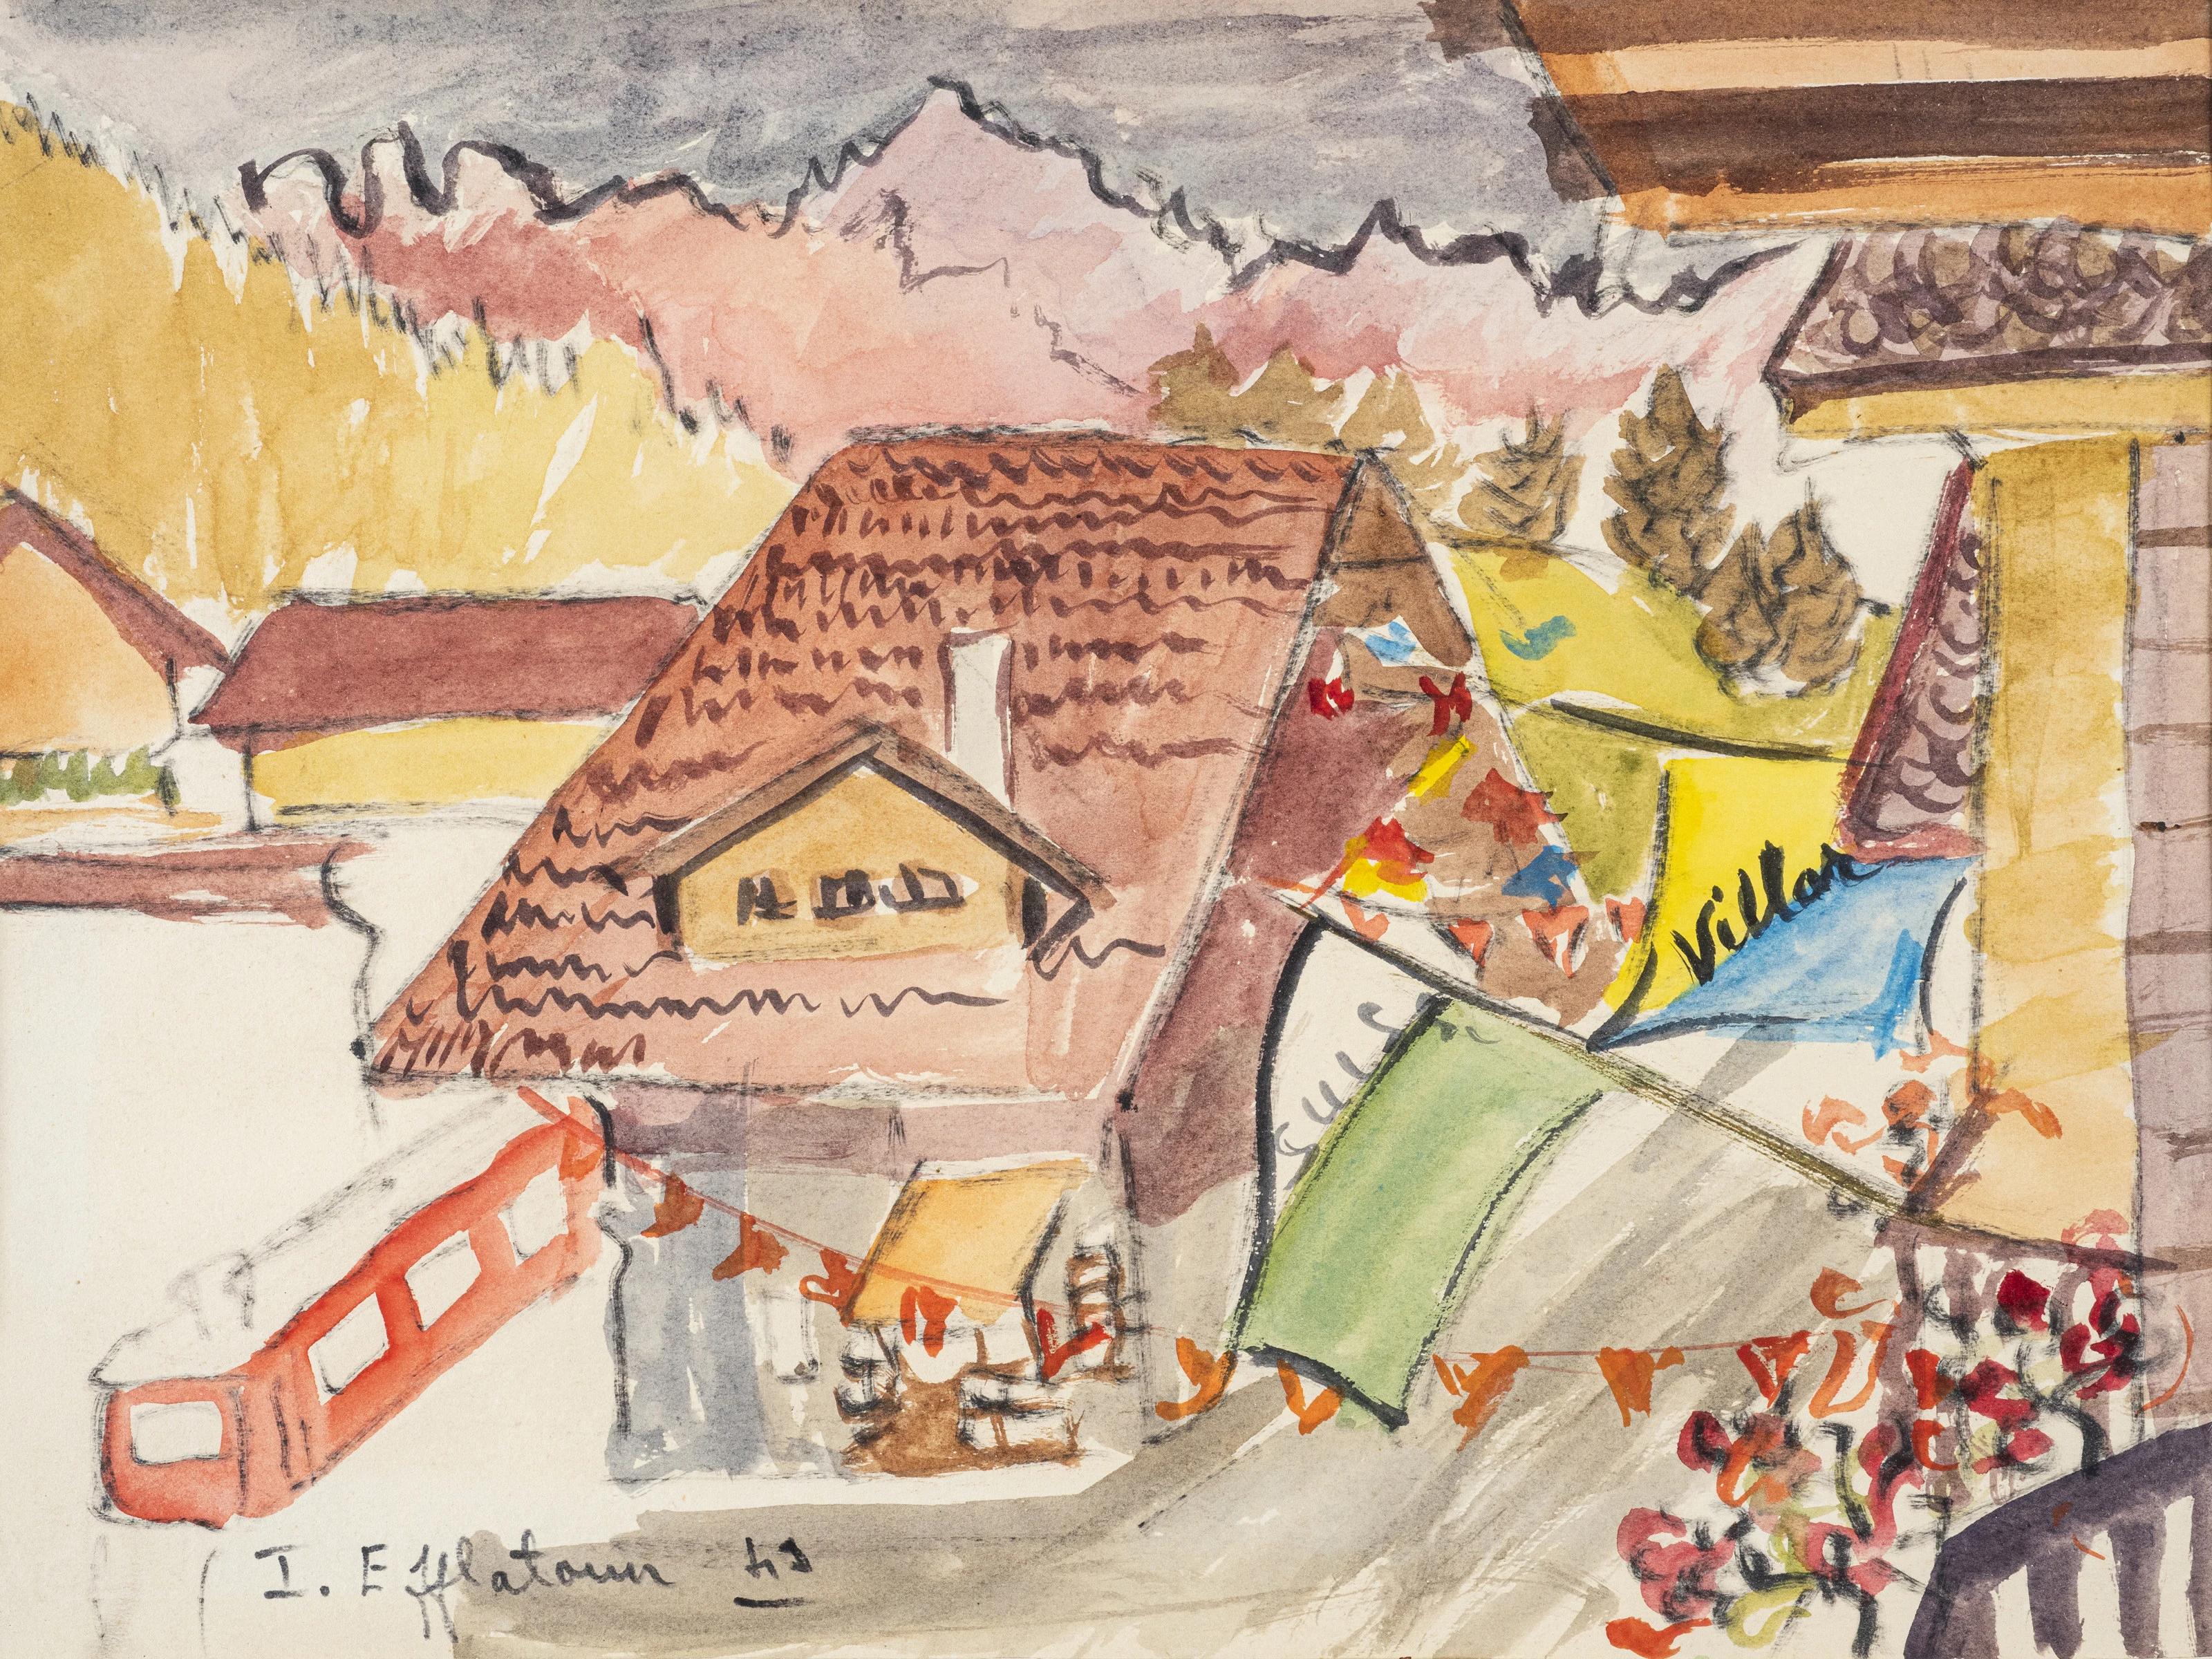 Inji EFFLATOUN Landscape Art - "Swiss Village" Landscape Watercolor Painting 10" x 12" inch by Inji Efflatoun